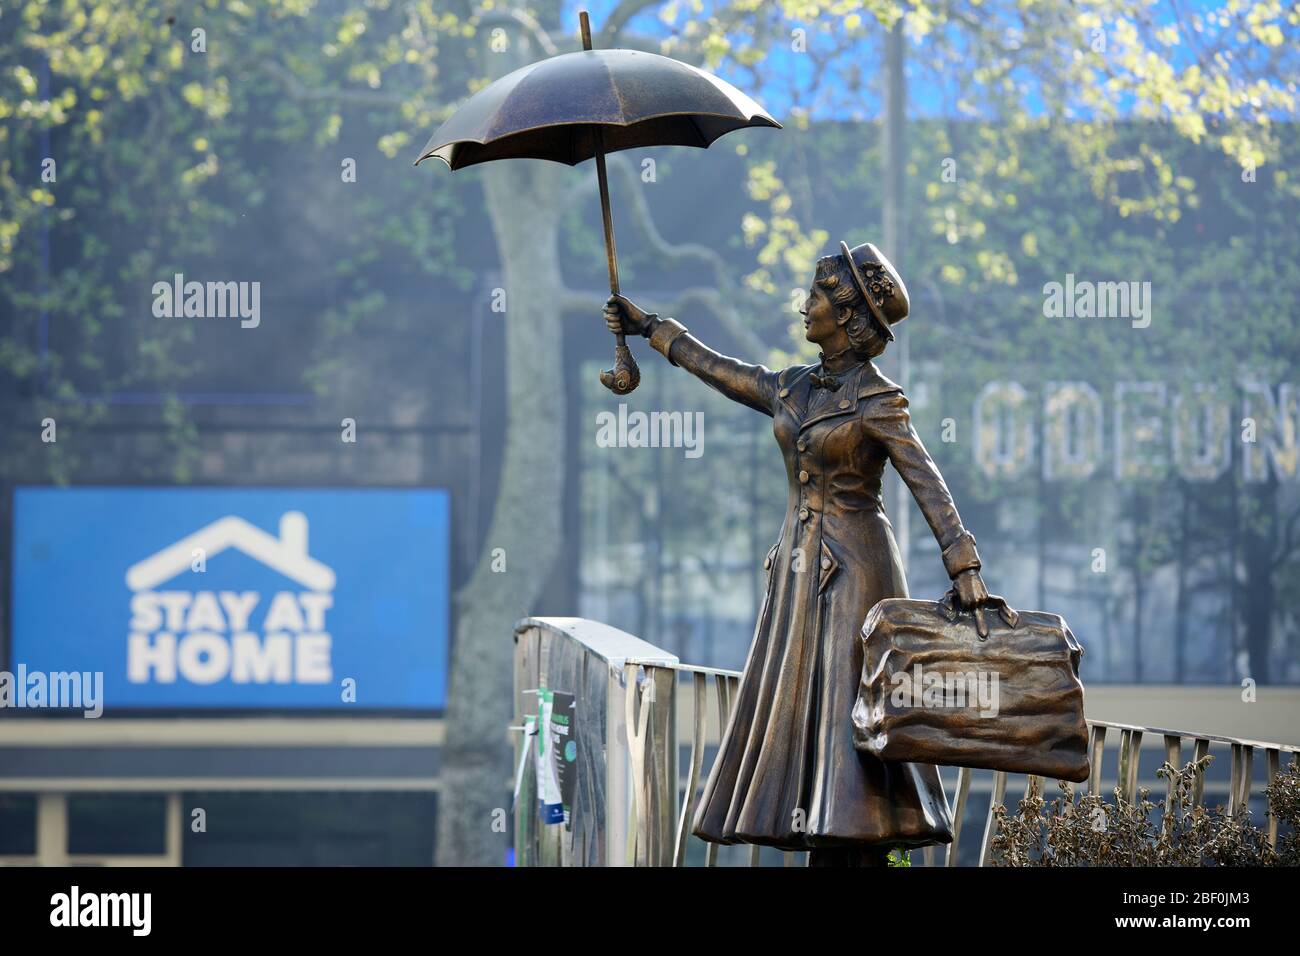 Londres, Reino Unido - 16 de abril de 2020: Una estatua de Mary Poppins en Leicester Square, frente a un cartel que dice a la gente que se aloje en casa durante el cierre de la pandemia del coronavirus Covid-19. Foto de stock